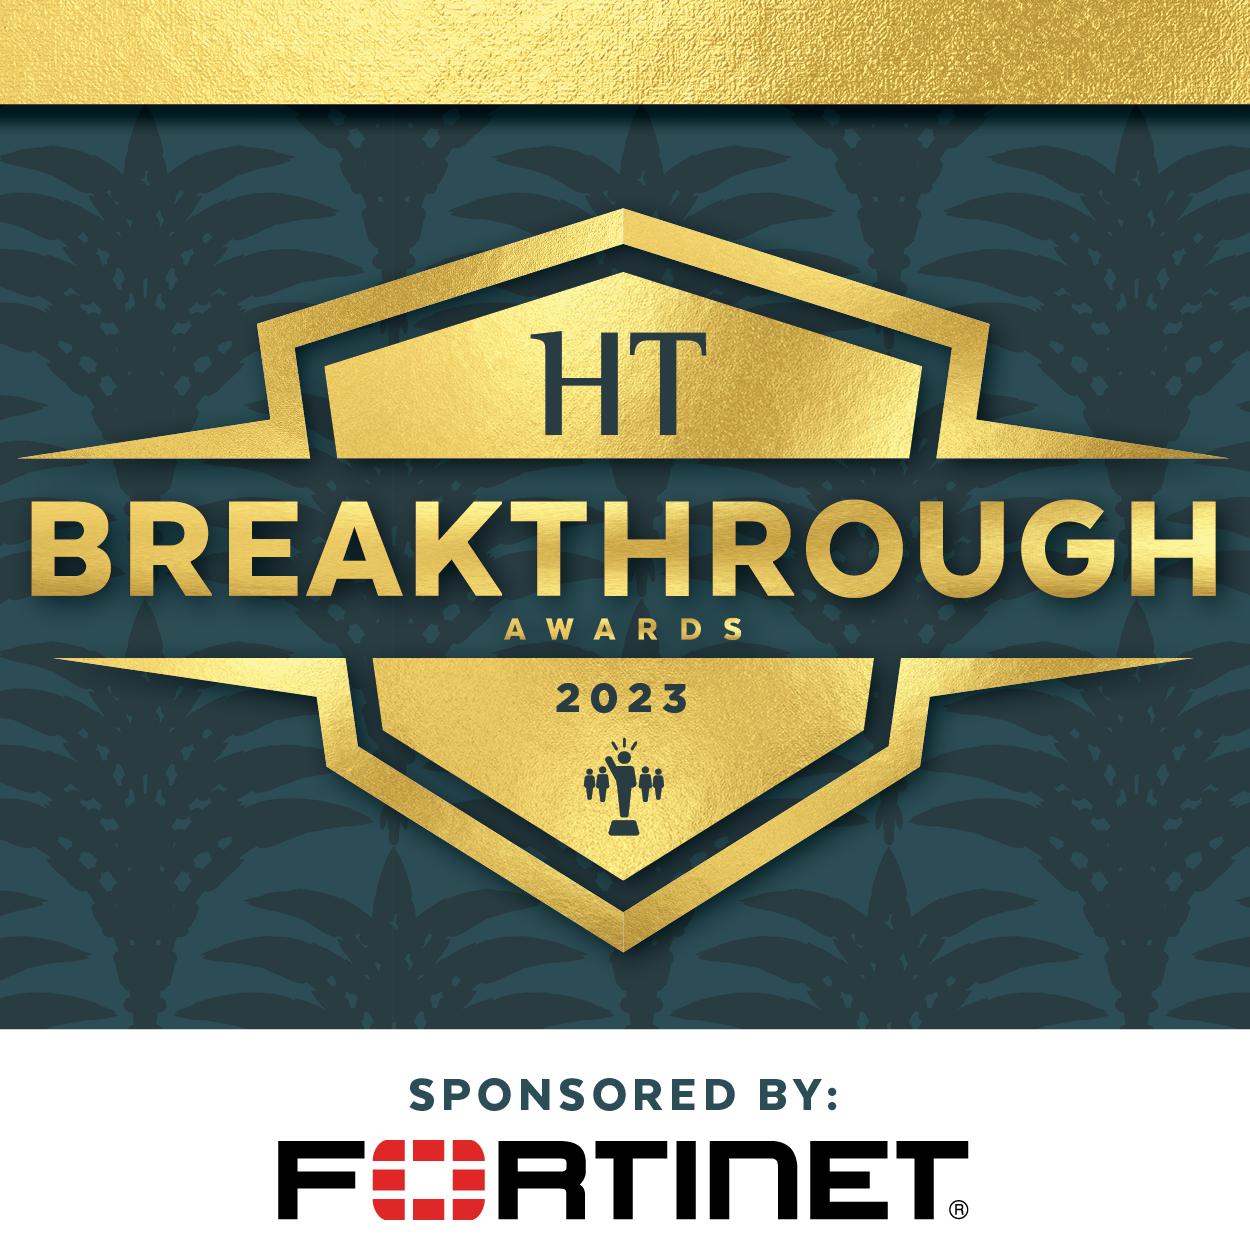 2023 MURTEC Breakthrough Awards, Sponsored by Fortinet